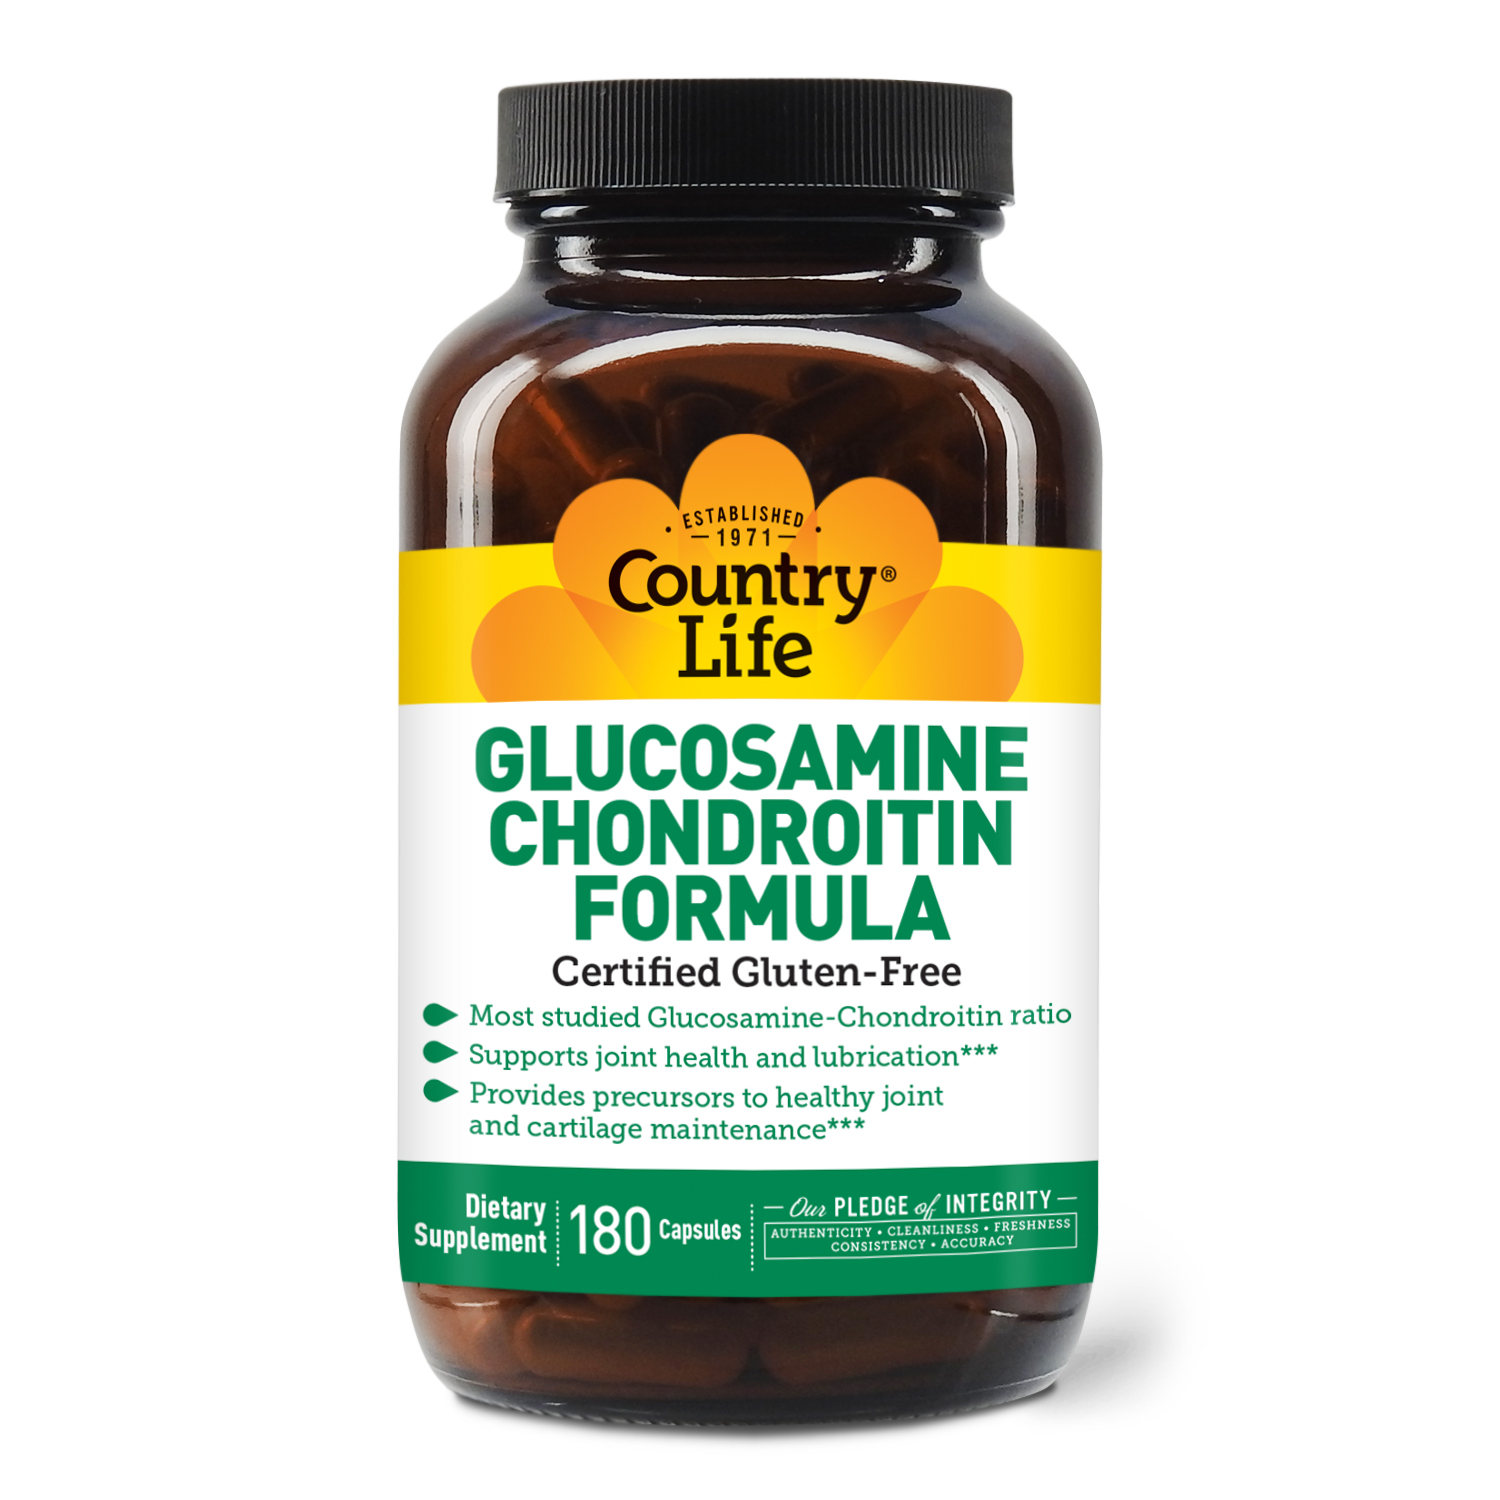 Glucosamine/Chondroitin Formula